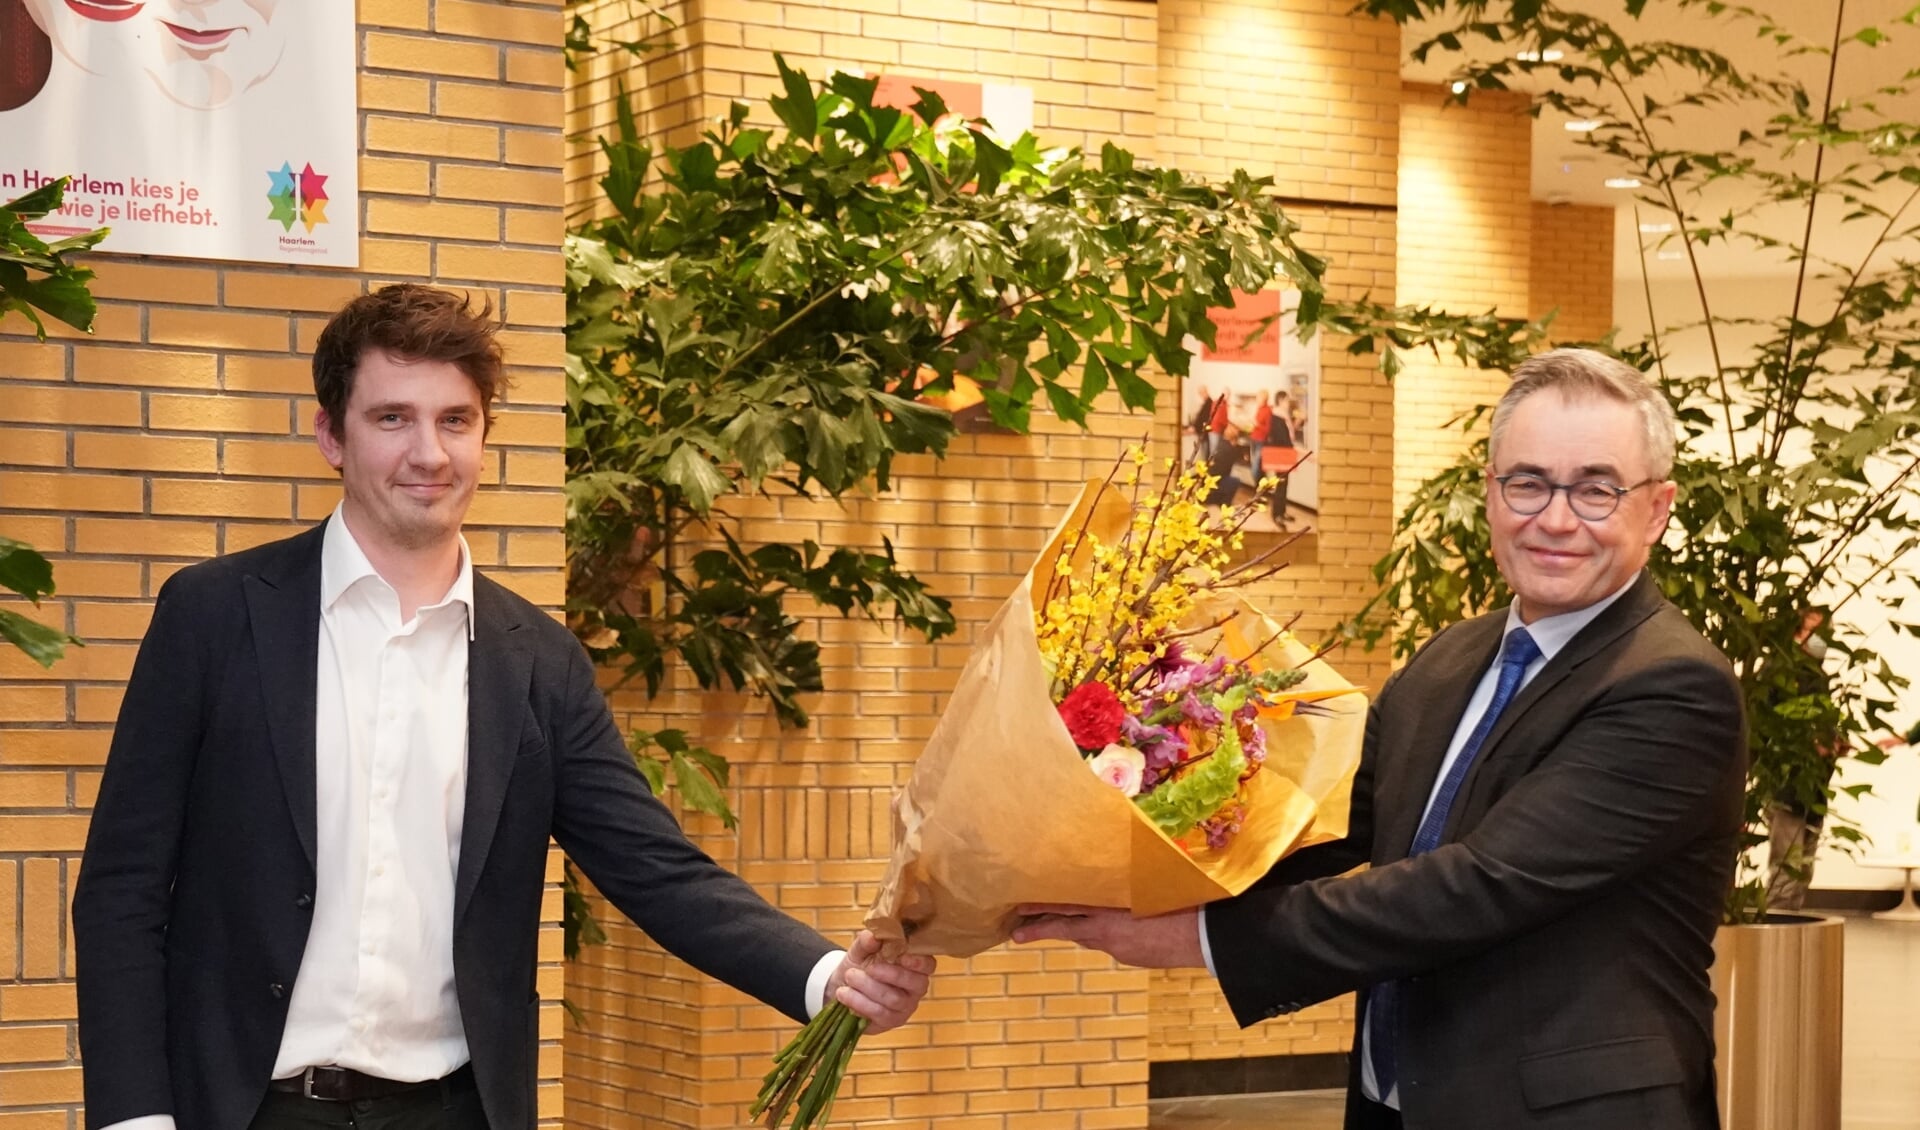 De Haarlemse gemeenteraad wil burgemeester Jos Wienen graag voor een tweede termijn voordragen.